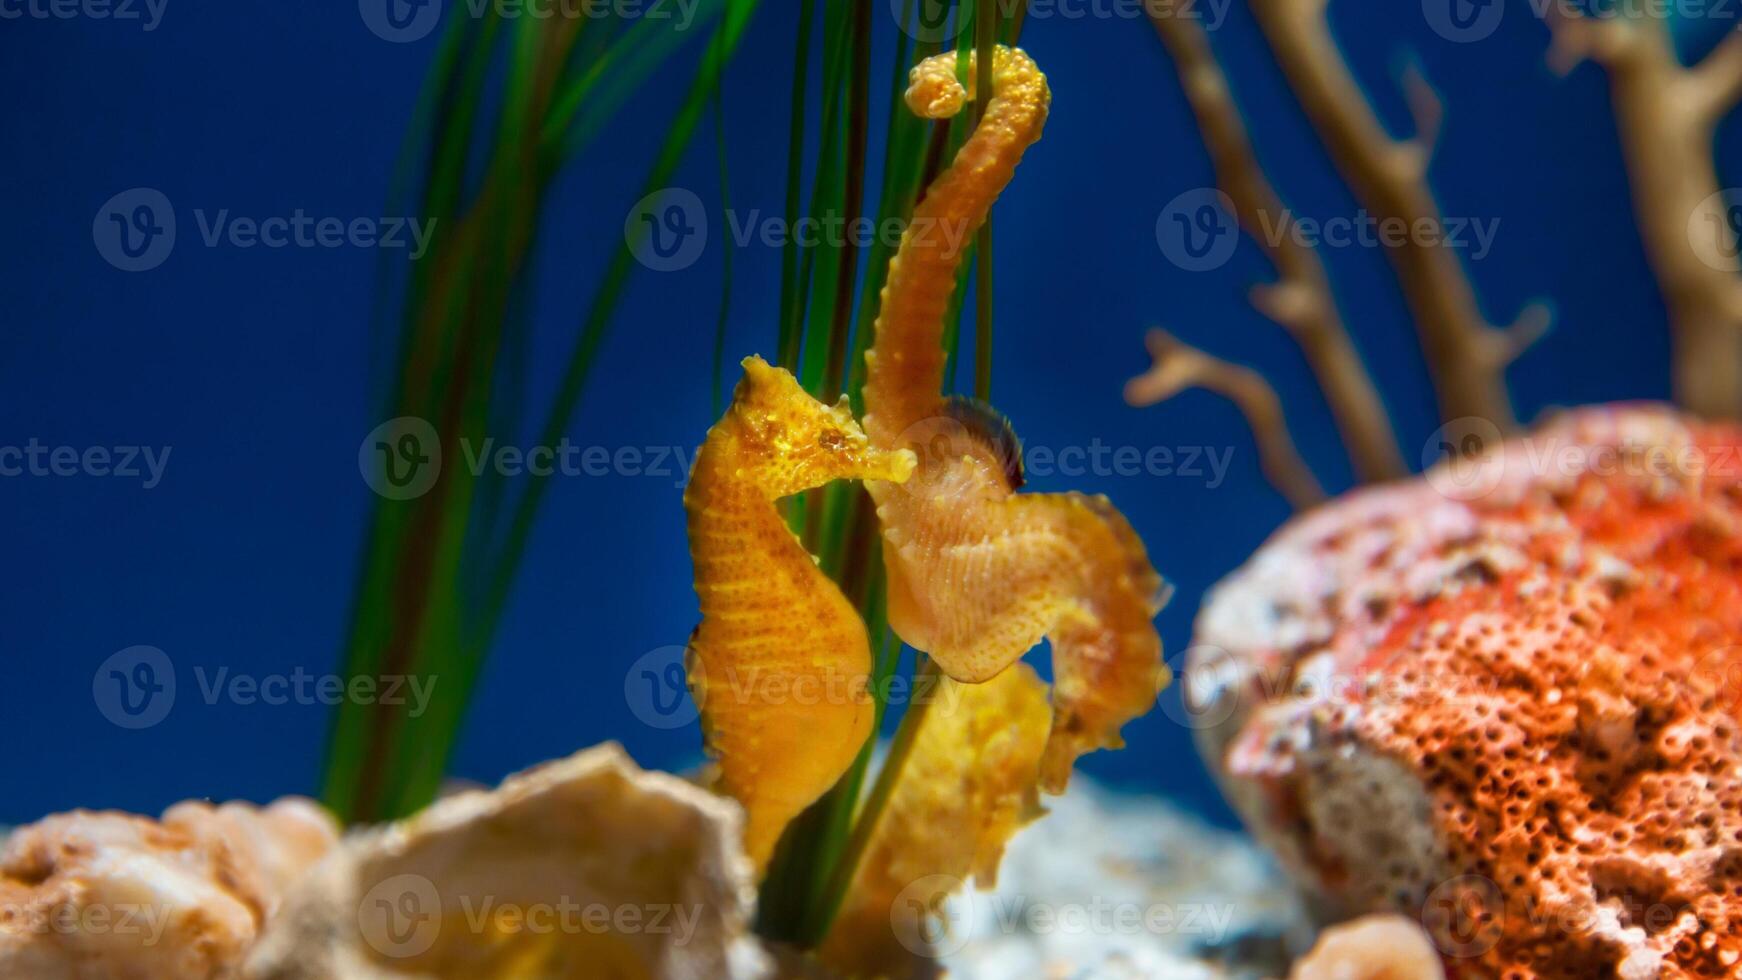 avvicinamento Comune colorato cavalluccio marino o ippocampo guttulatus nuoto sotto acqua, vita marina foto